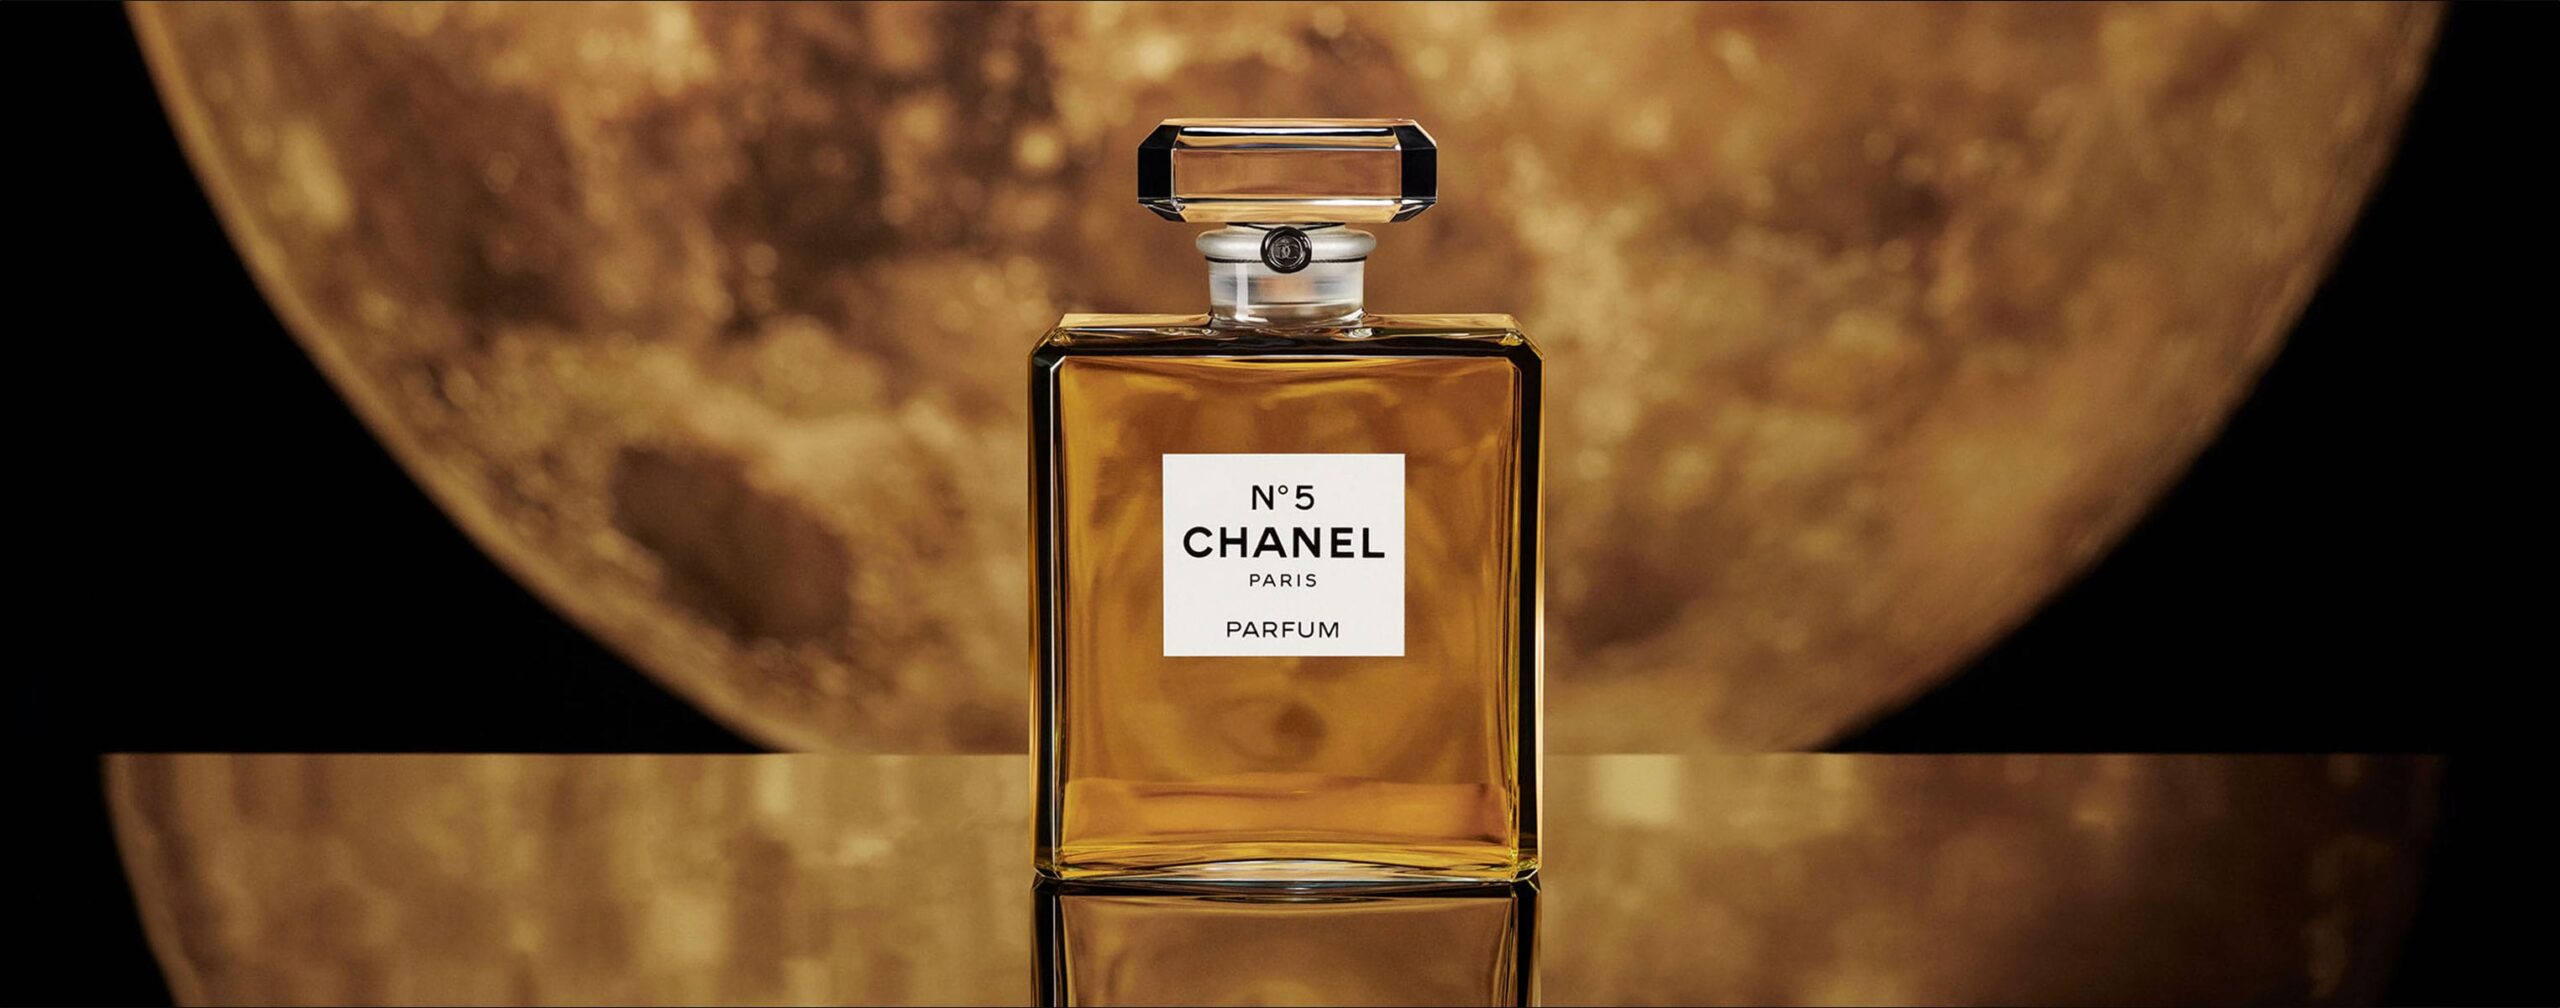 sweet chanel perfume